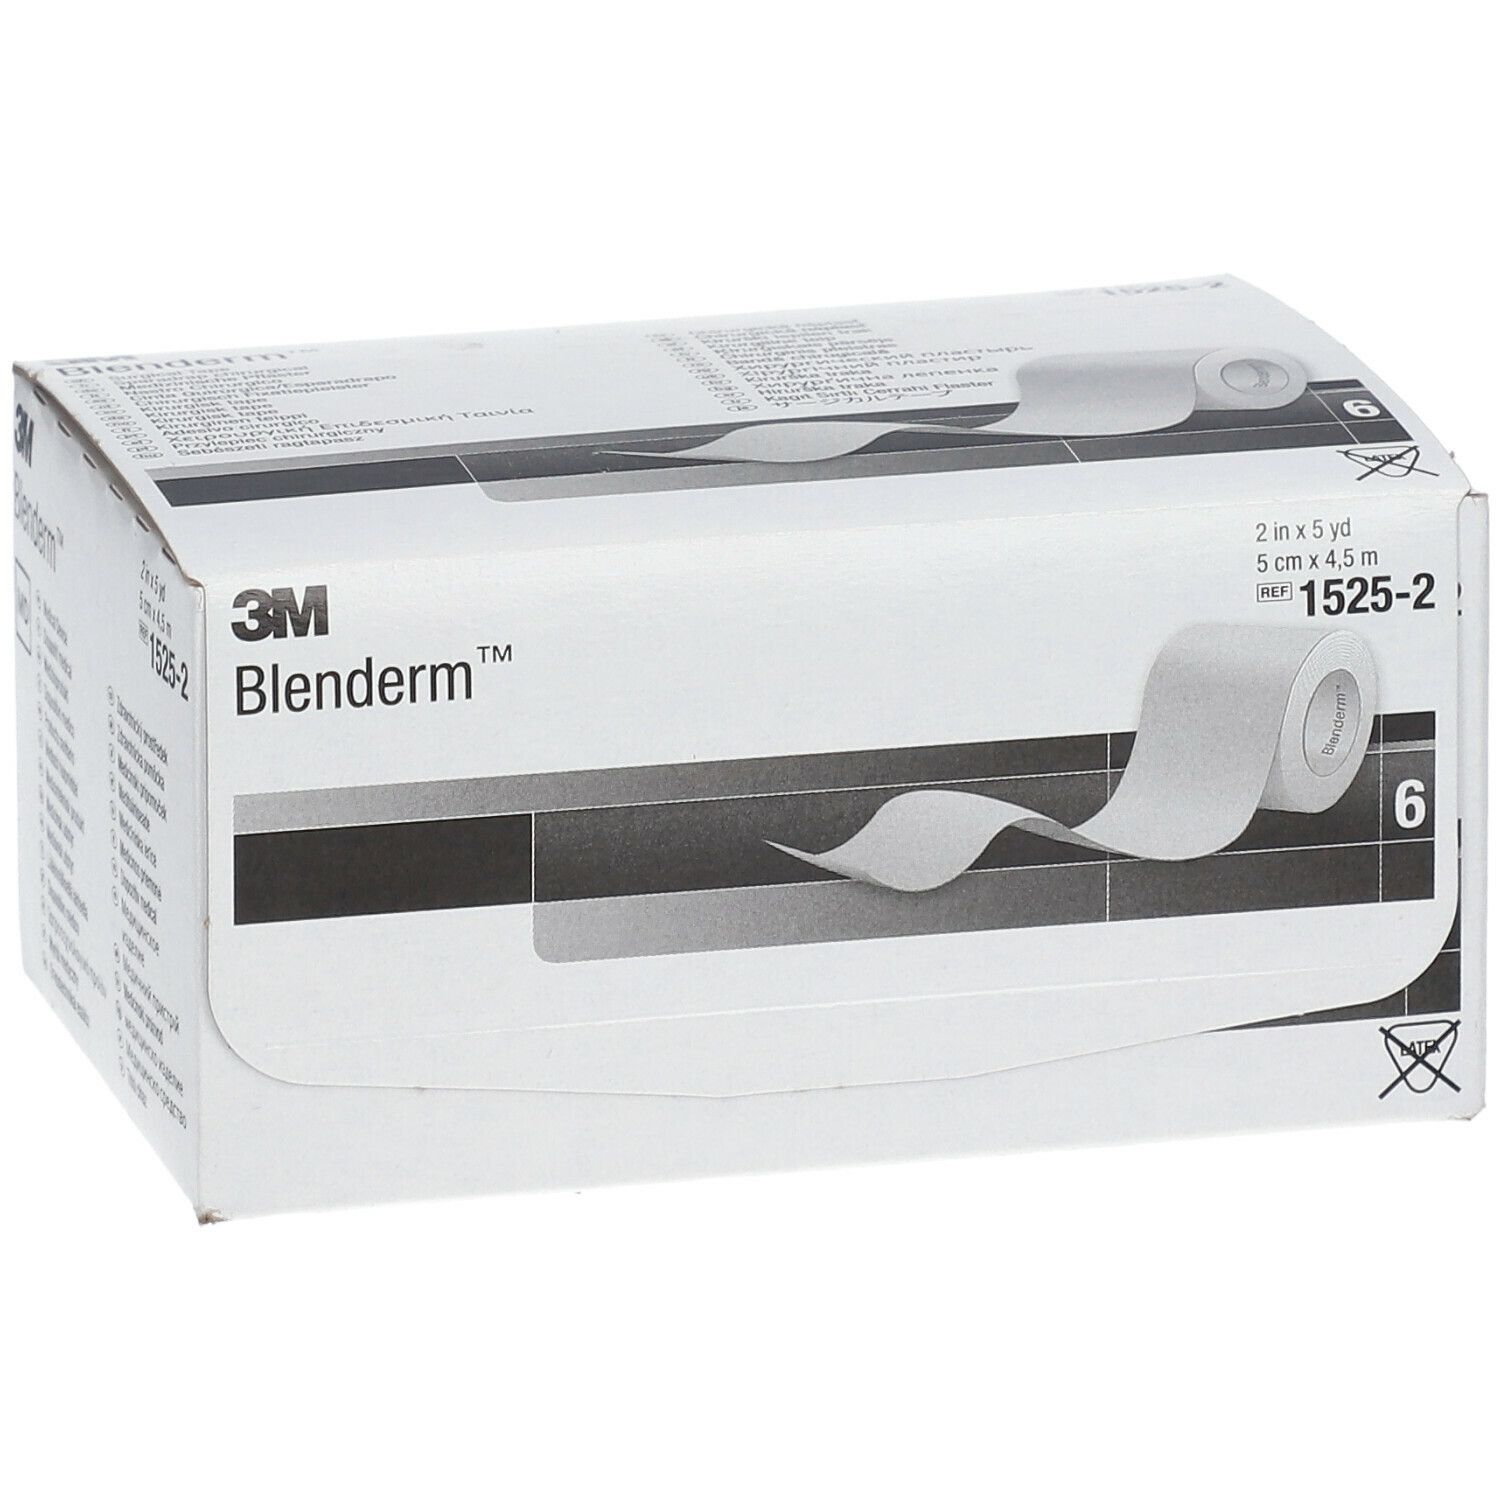 3M™ Blenderm™ Medizinische Pflaster hypoallergen 5 cm x 4,5 m